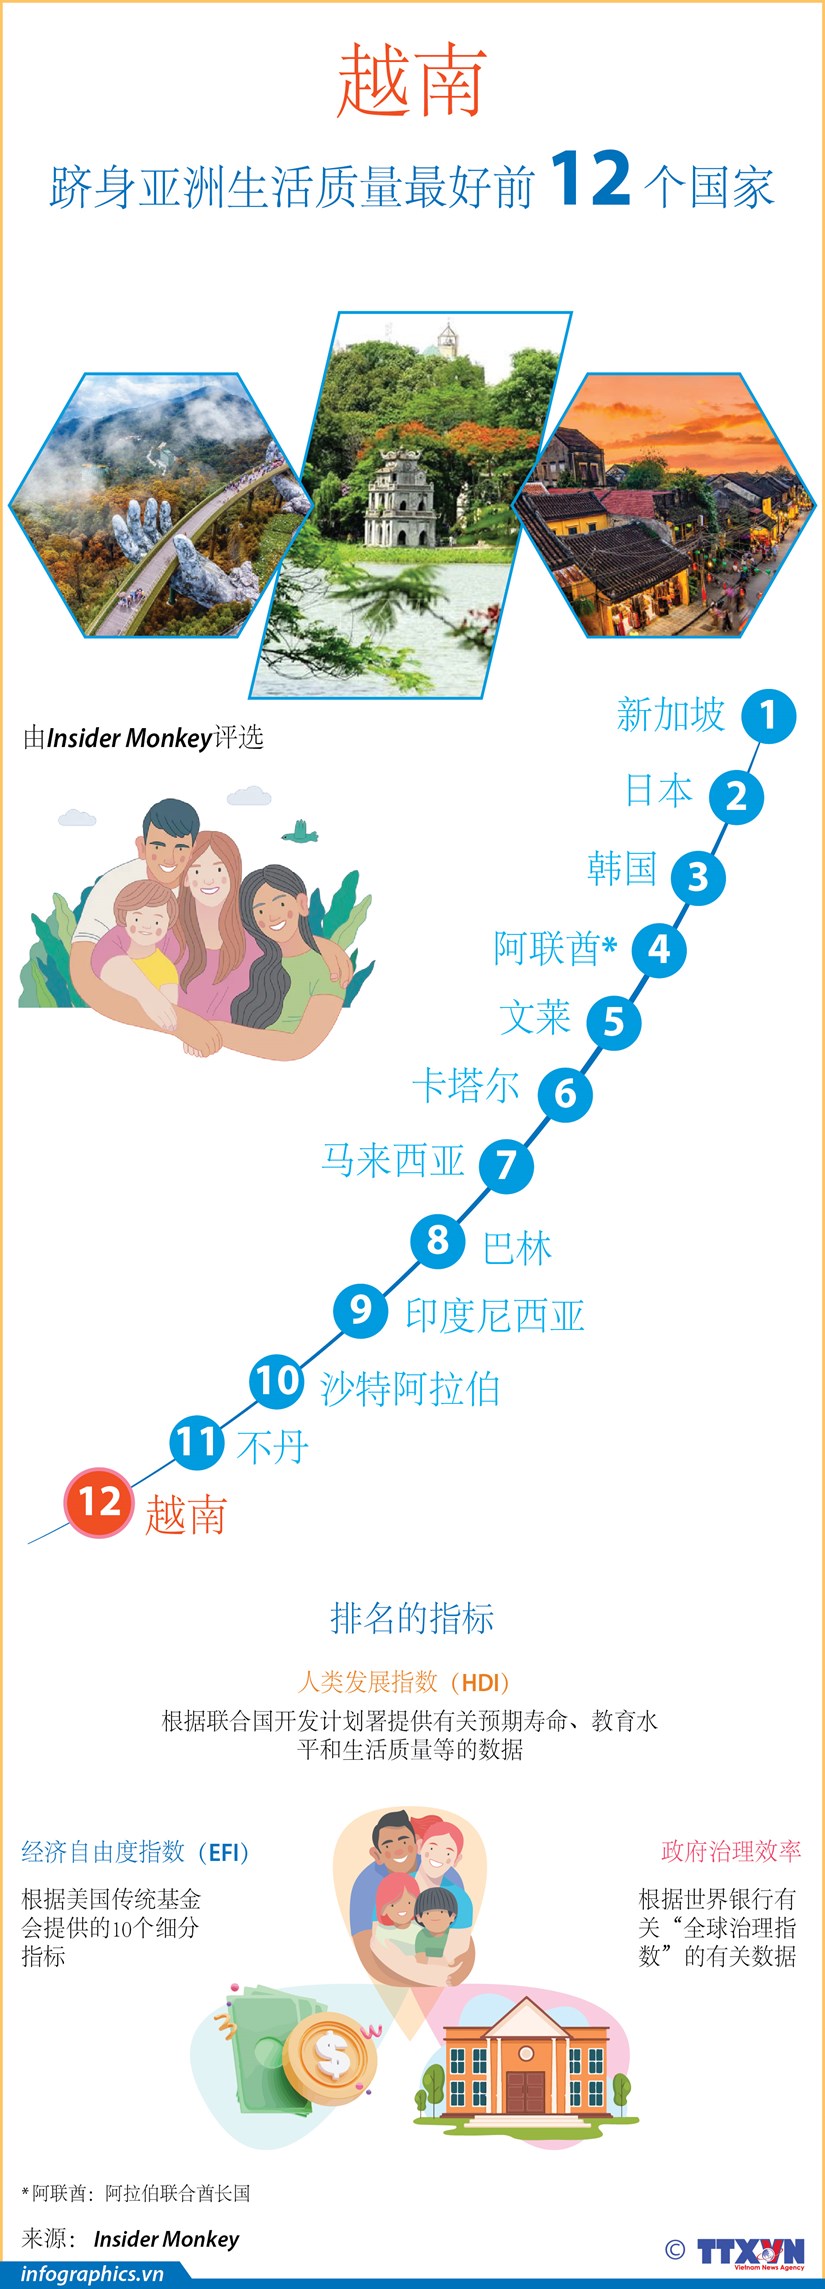 图表新闻：越南跻身亚洲生活质量最好前 12 个国家 hinh anh 1